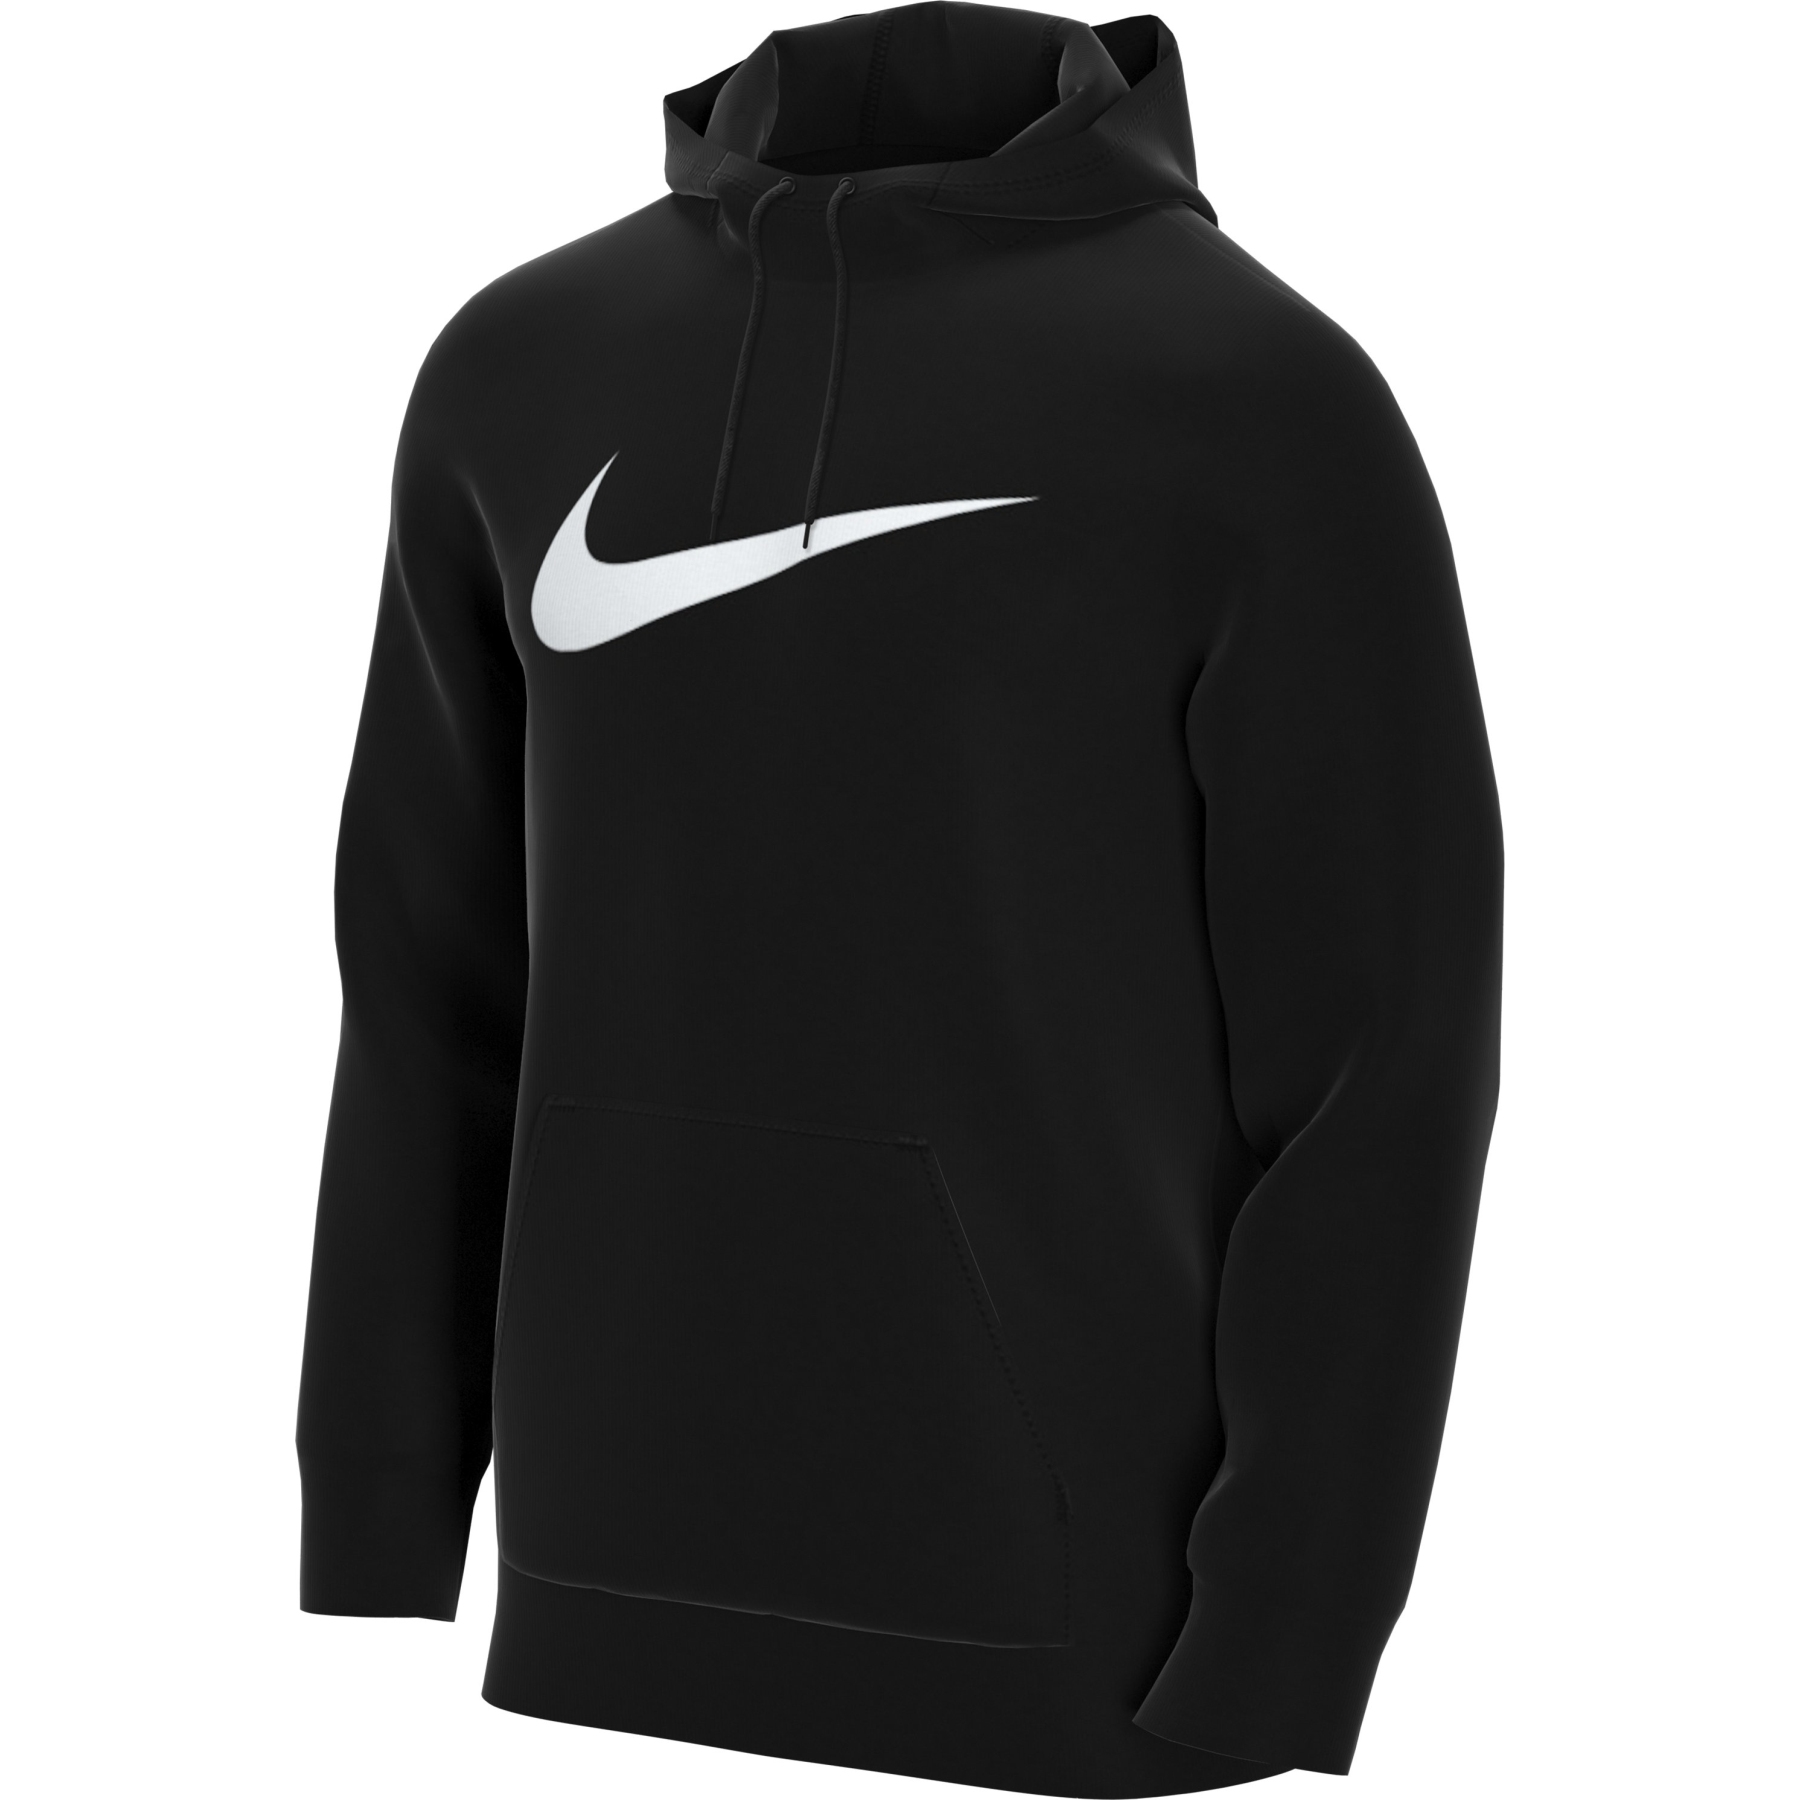 Produktbild von Nike Dri-FIT Training Pullover für Herren - schwarz/weiss CZ2425-010